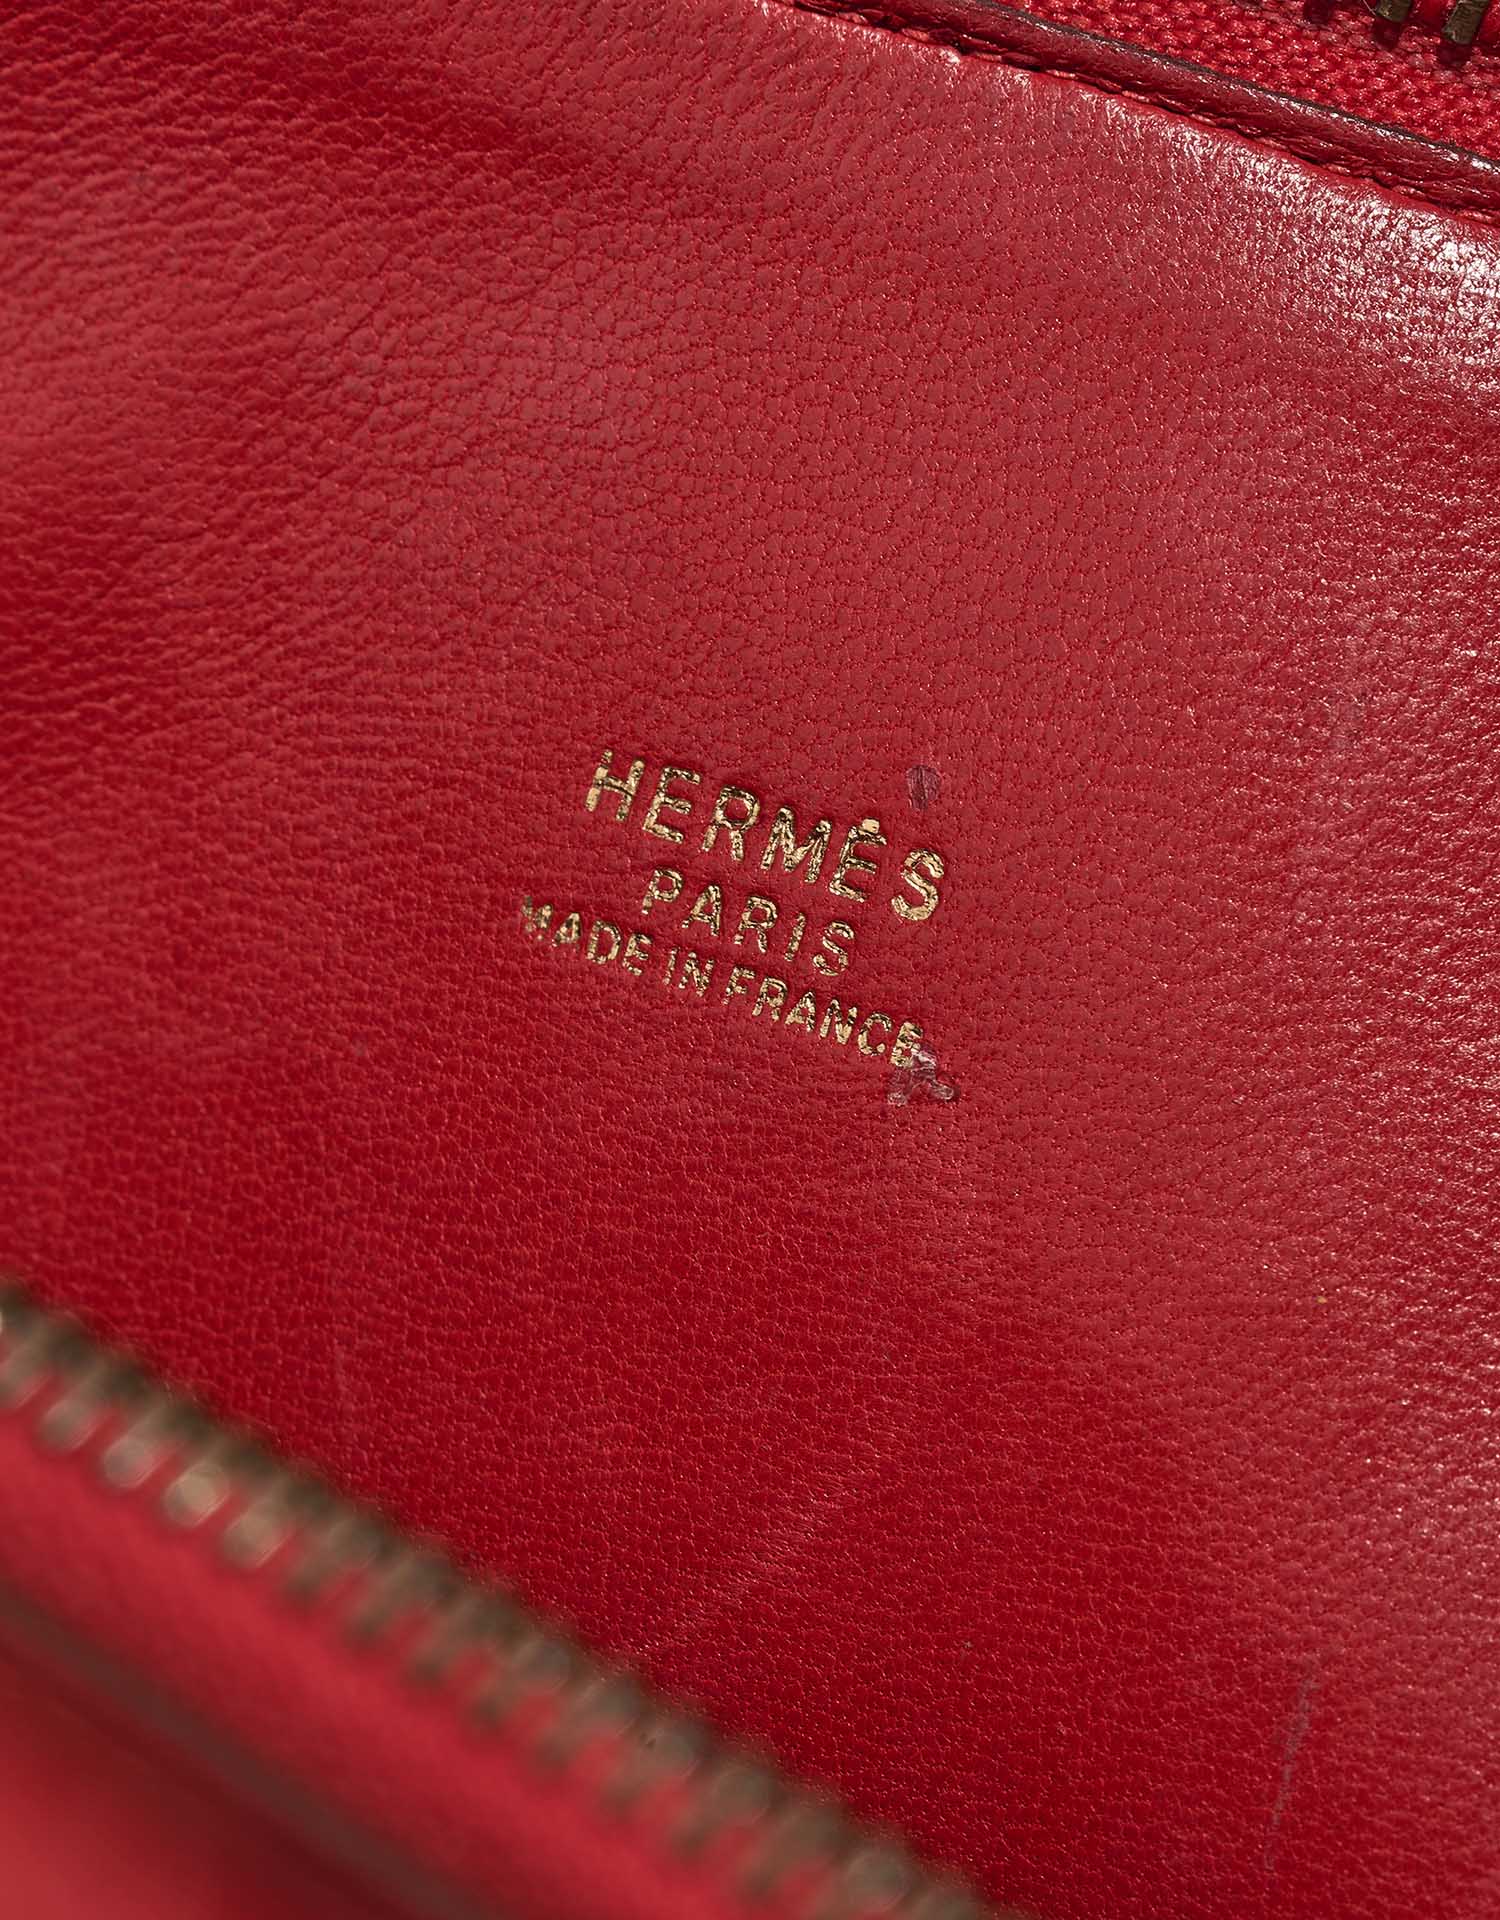 Hermès Bolide 27 RougeVif Logo | Verkaufen Sie Ihre Designertasche auf Saclab.com